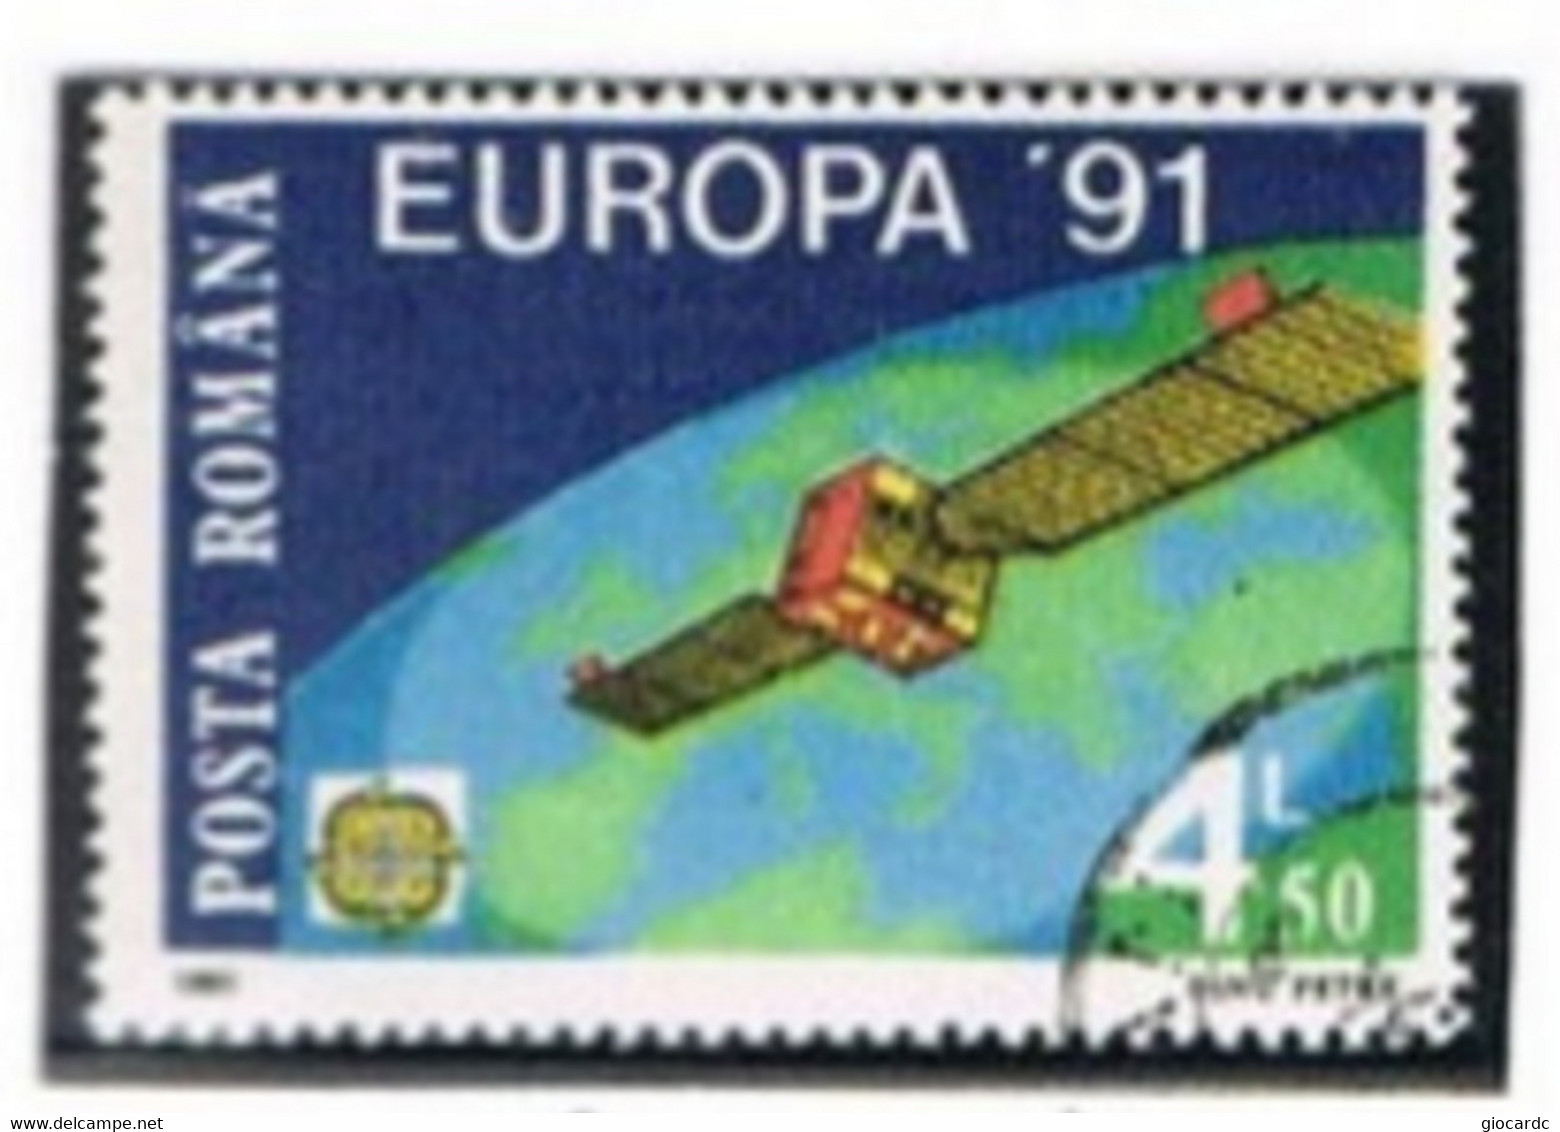 ROMANIA   - SG 5334   -  1991 EUROPA: EUTELSAT 1  - USED ° - Gebruikt